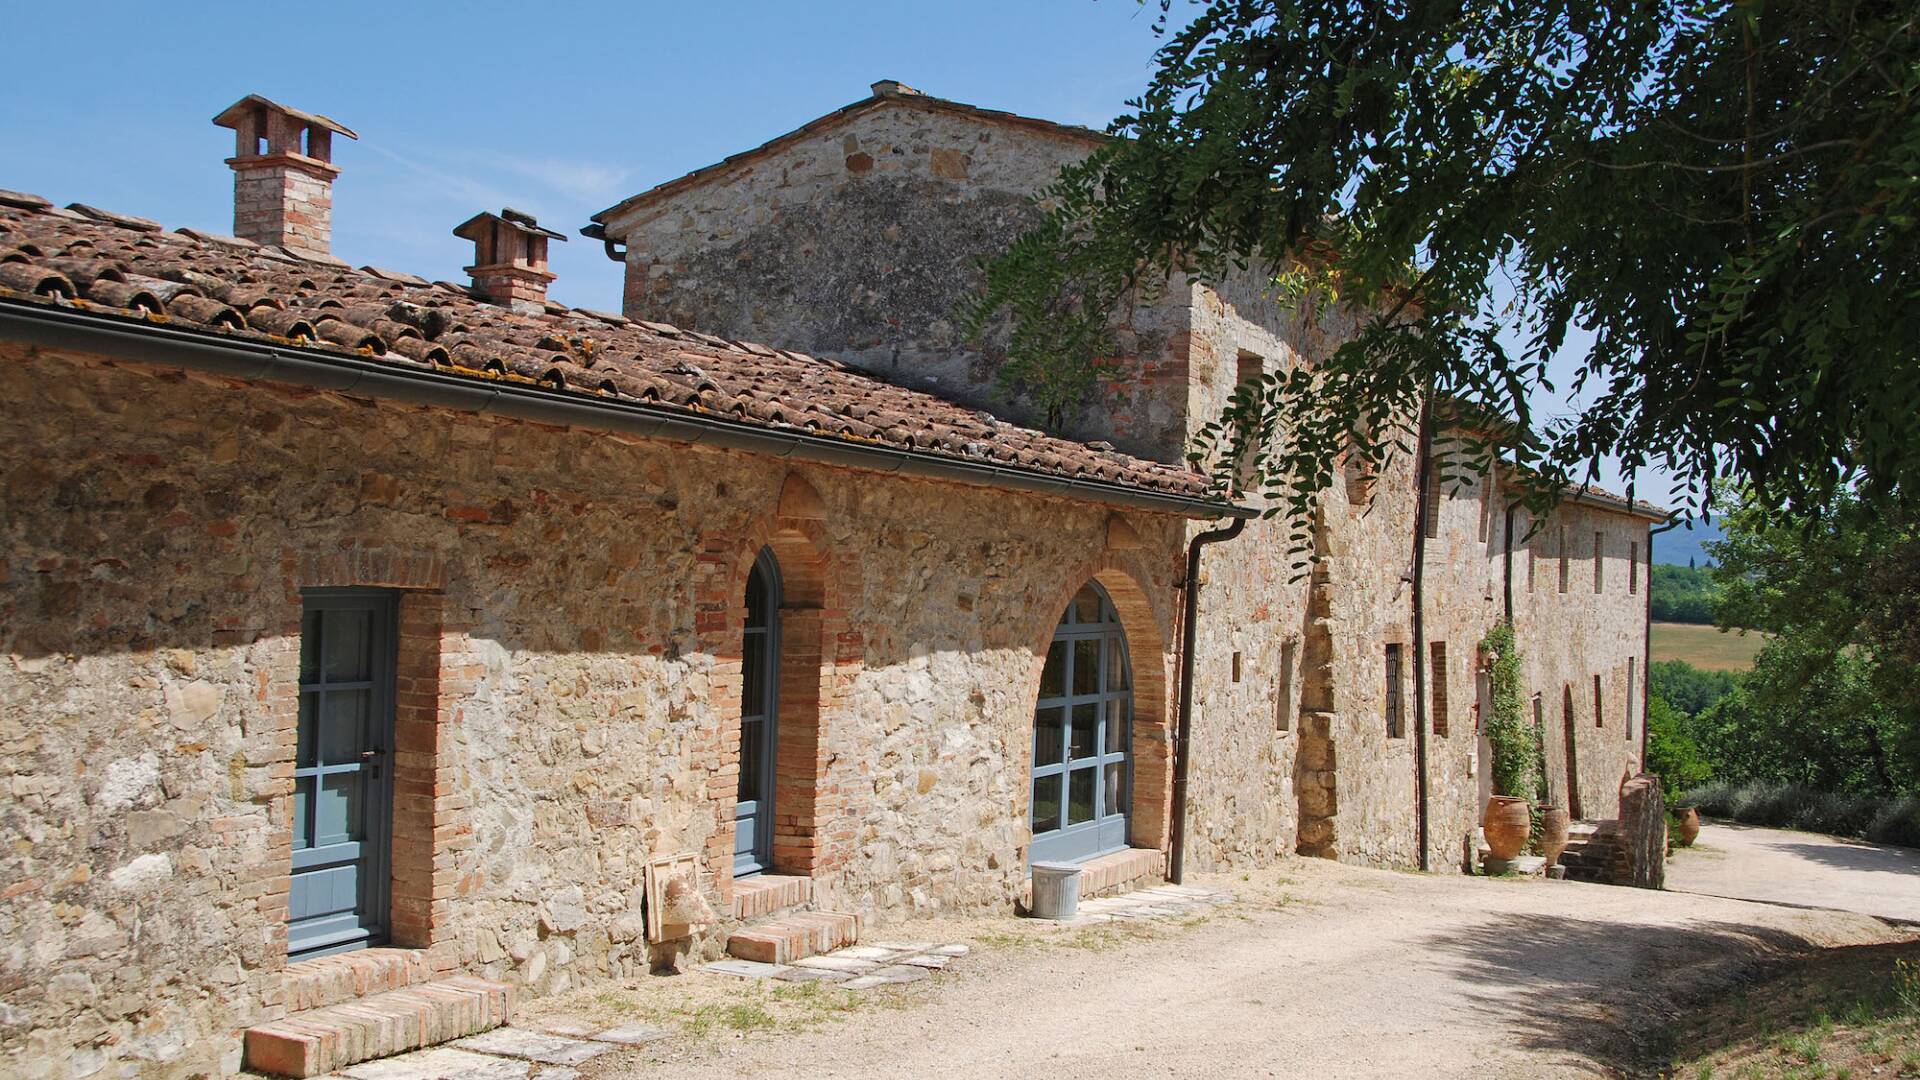 annex, adjacent to the main villa